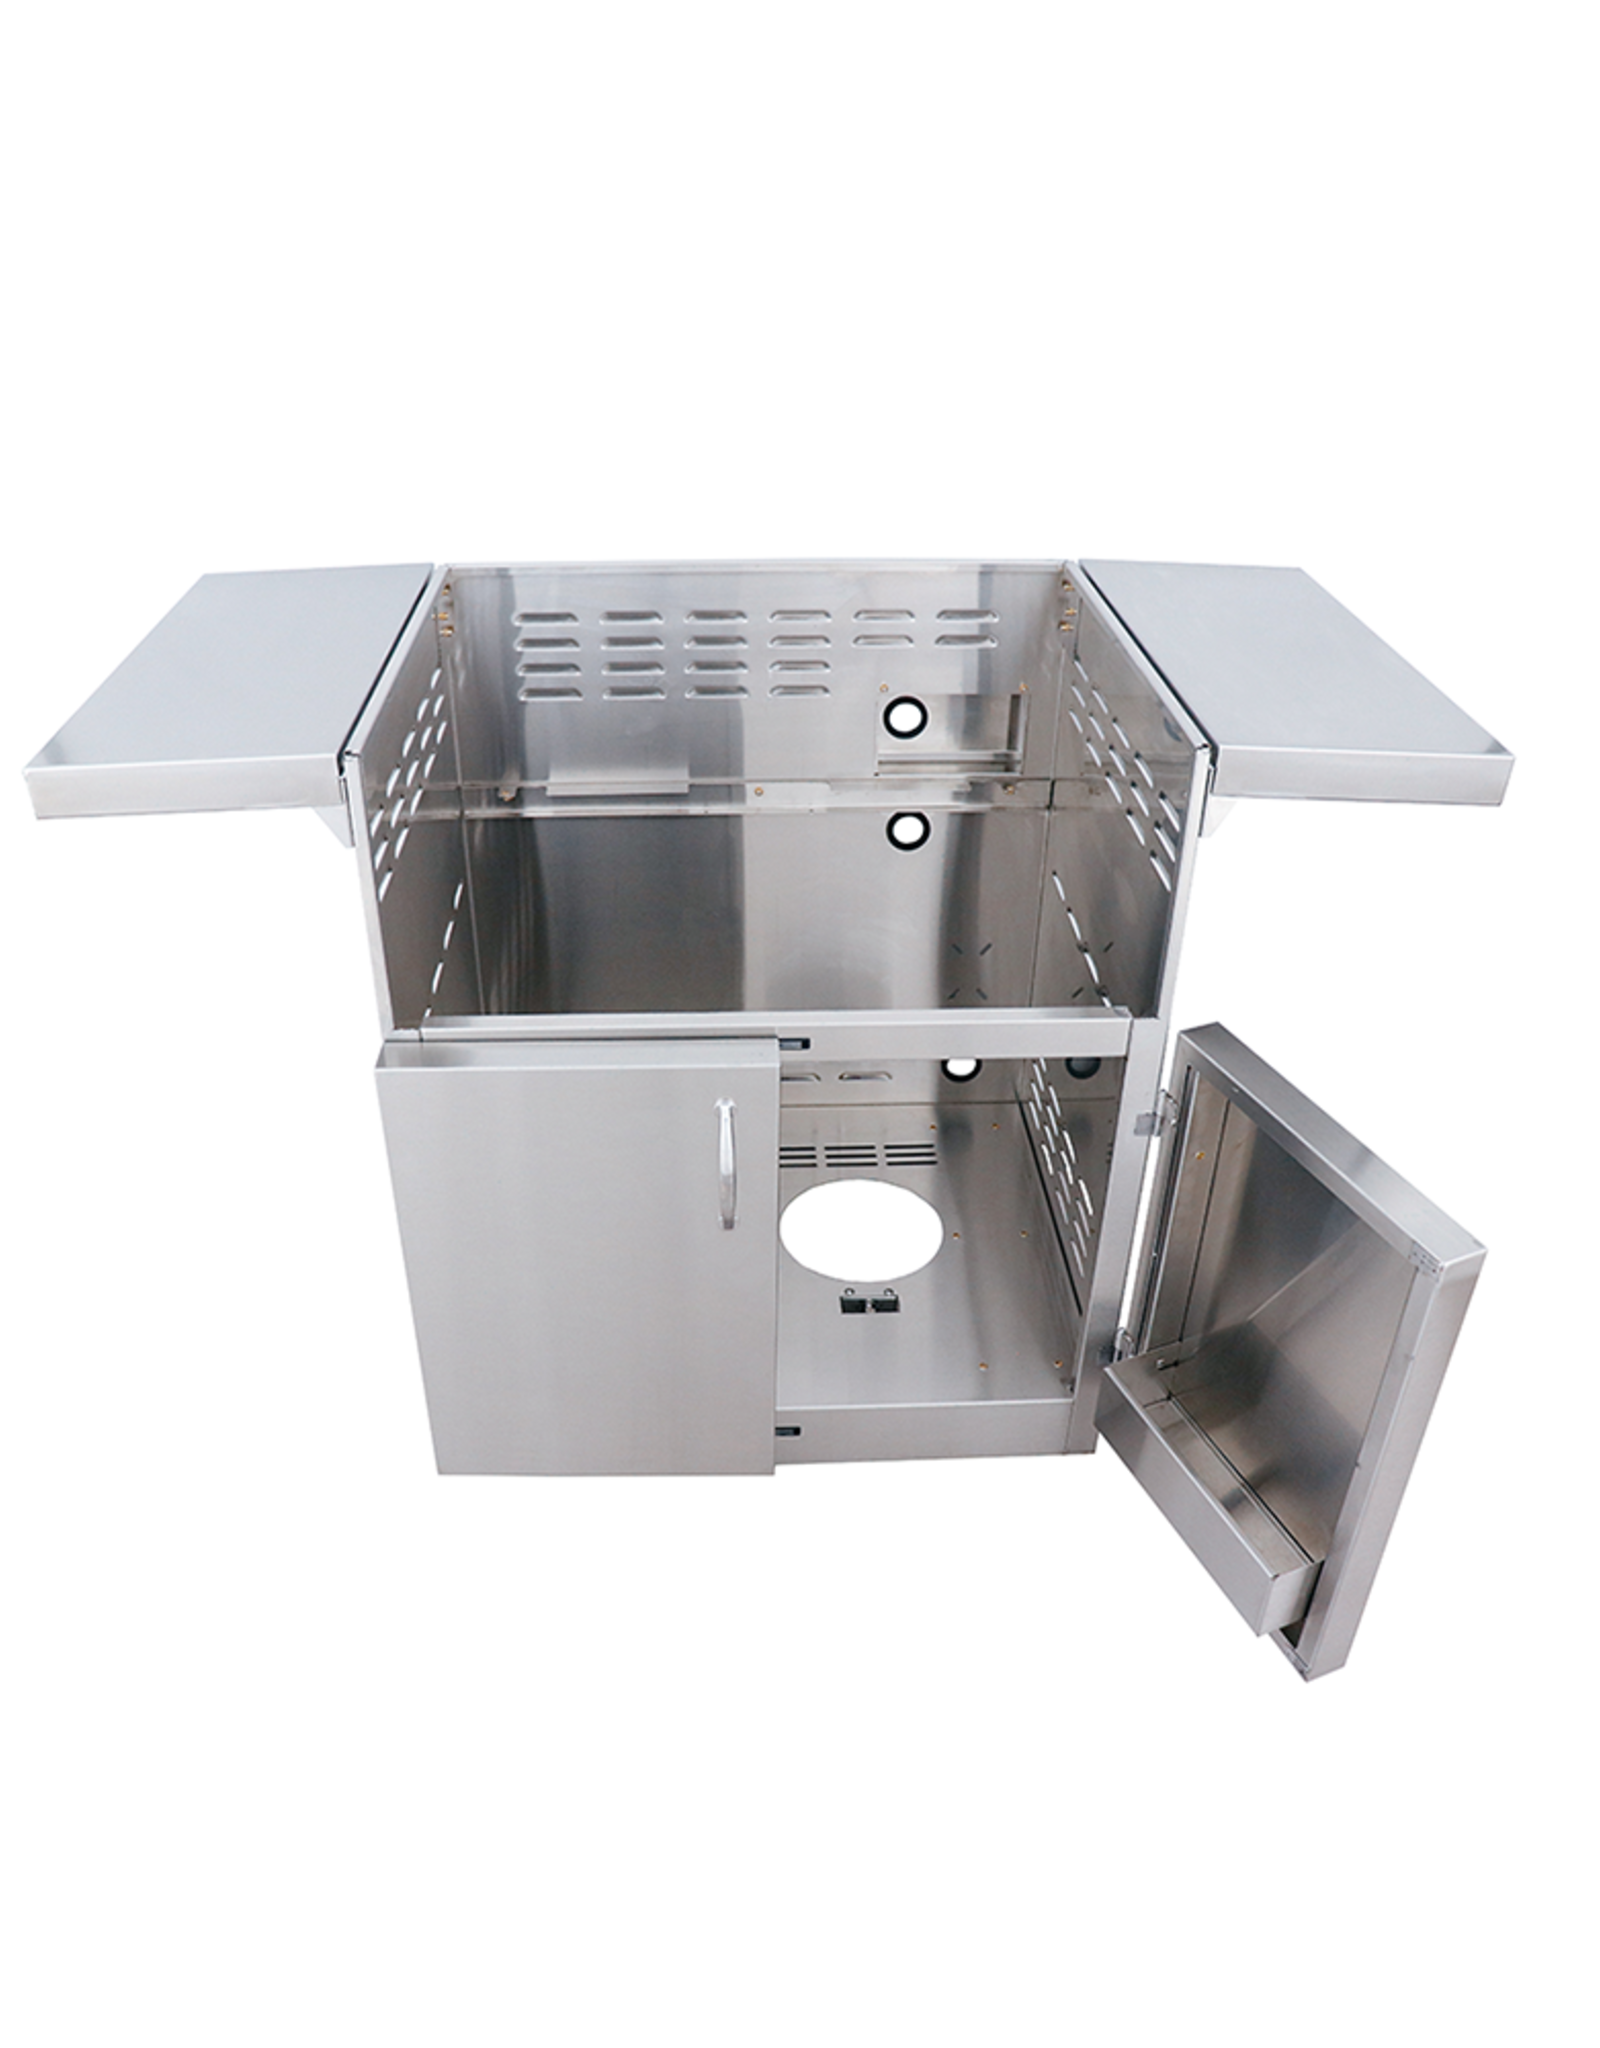 Renaissance Cooking Systems Renaissance 30" Freestanding ARG Cart #304 SS 2-Door Design - ARG30CART